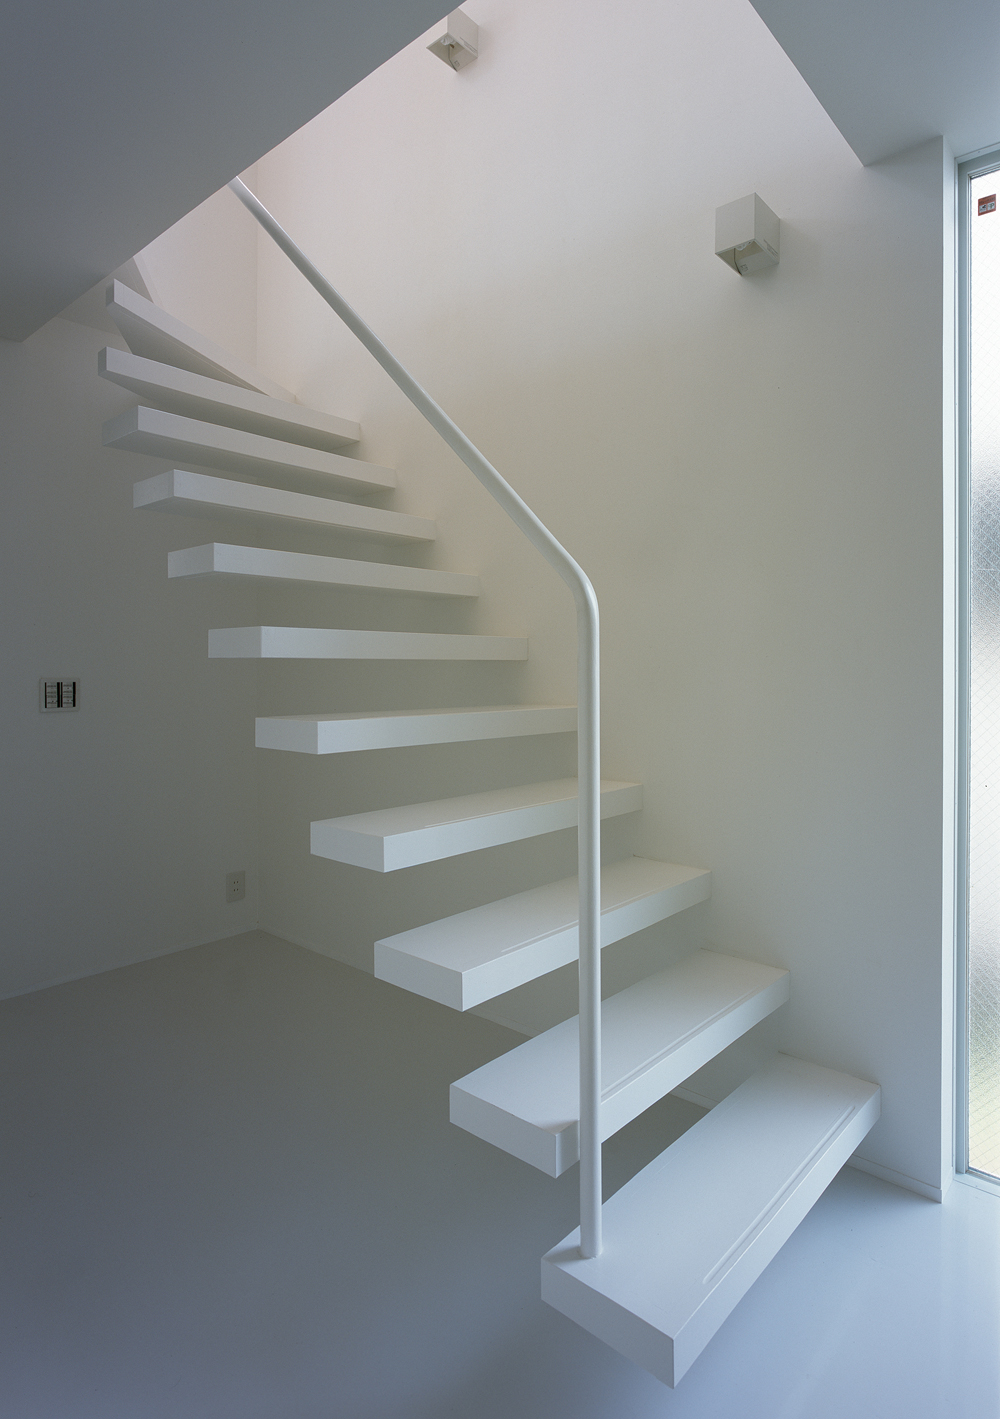 片持ち階段にすることで空間に広がりを感じさせるようにした階段まわり